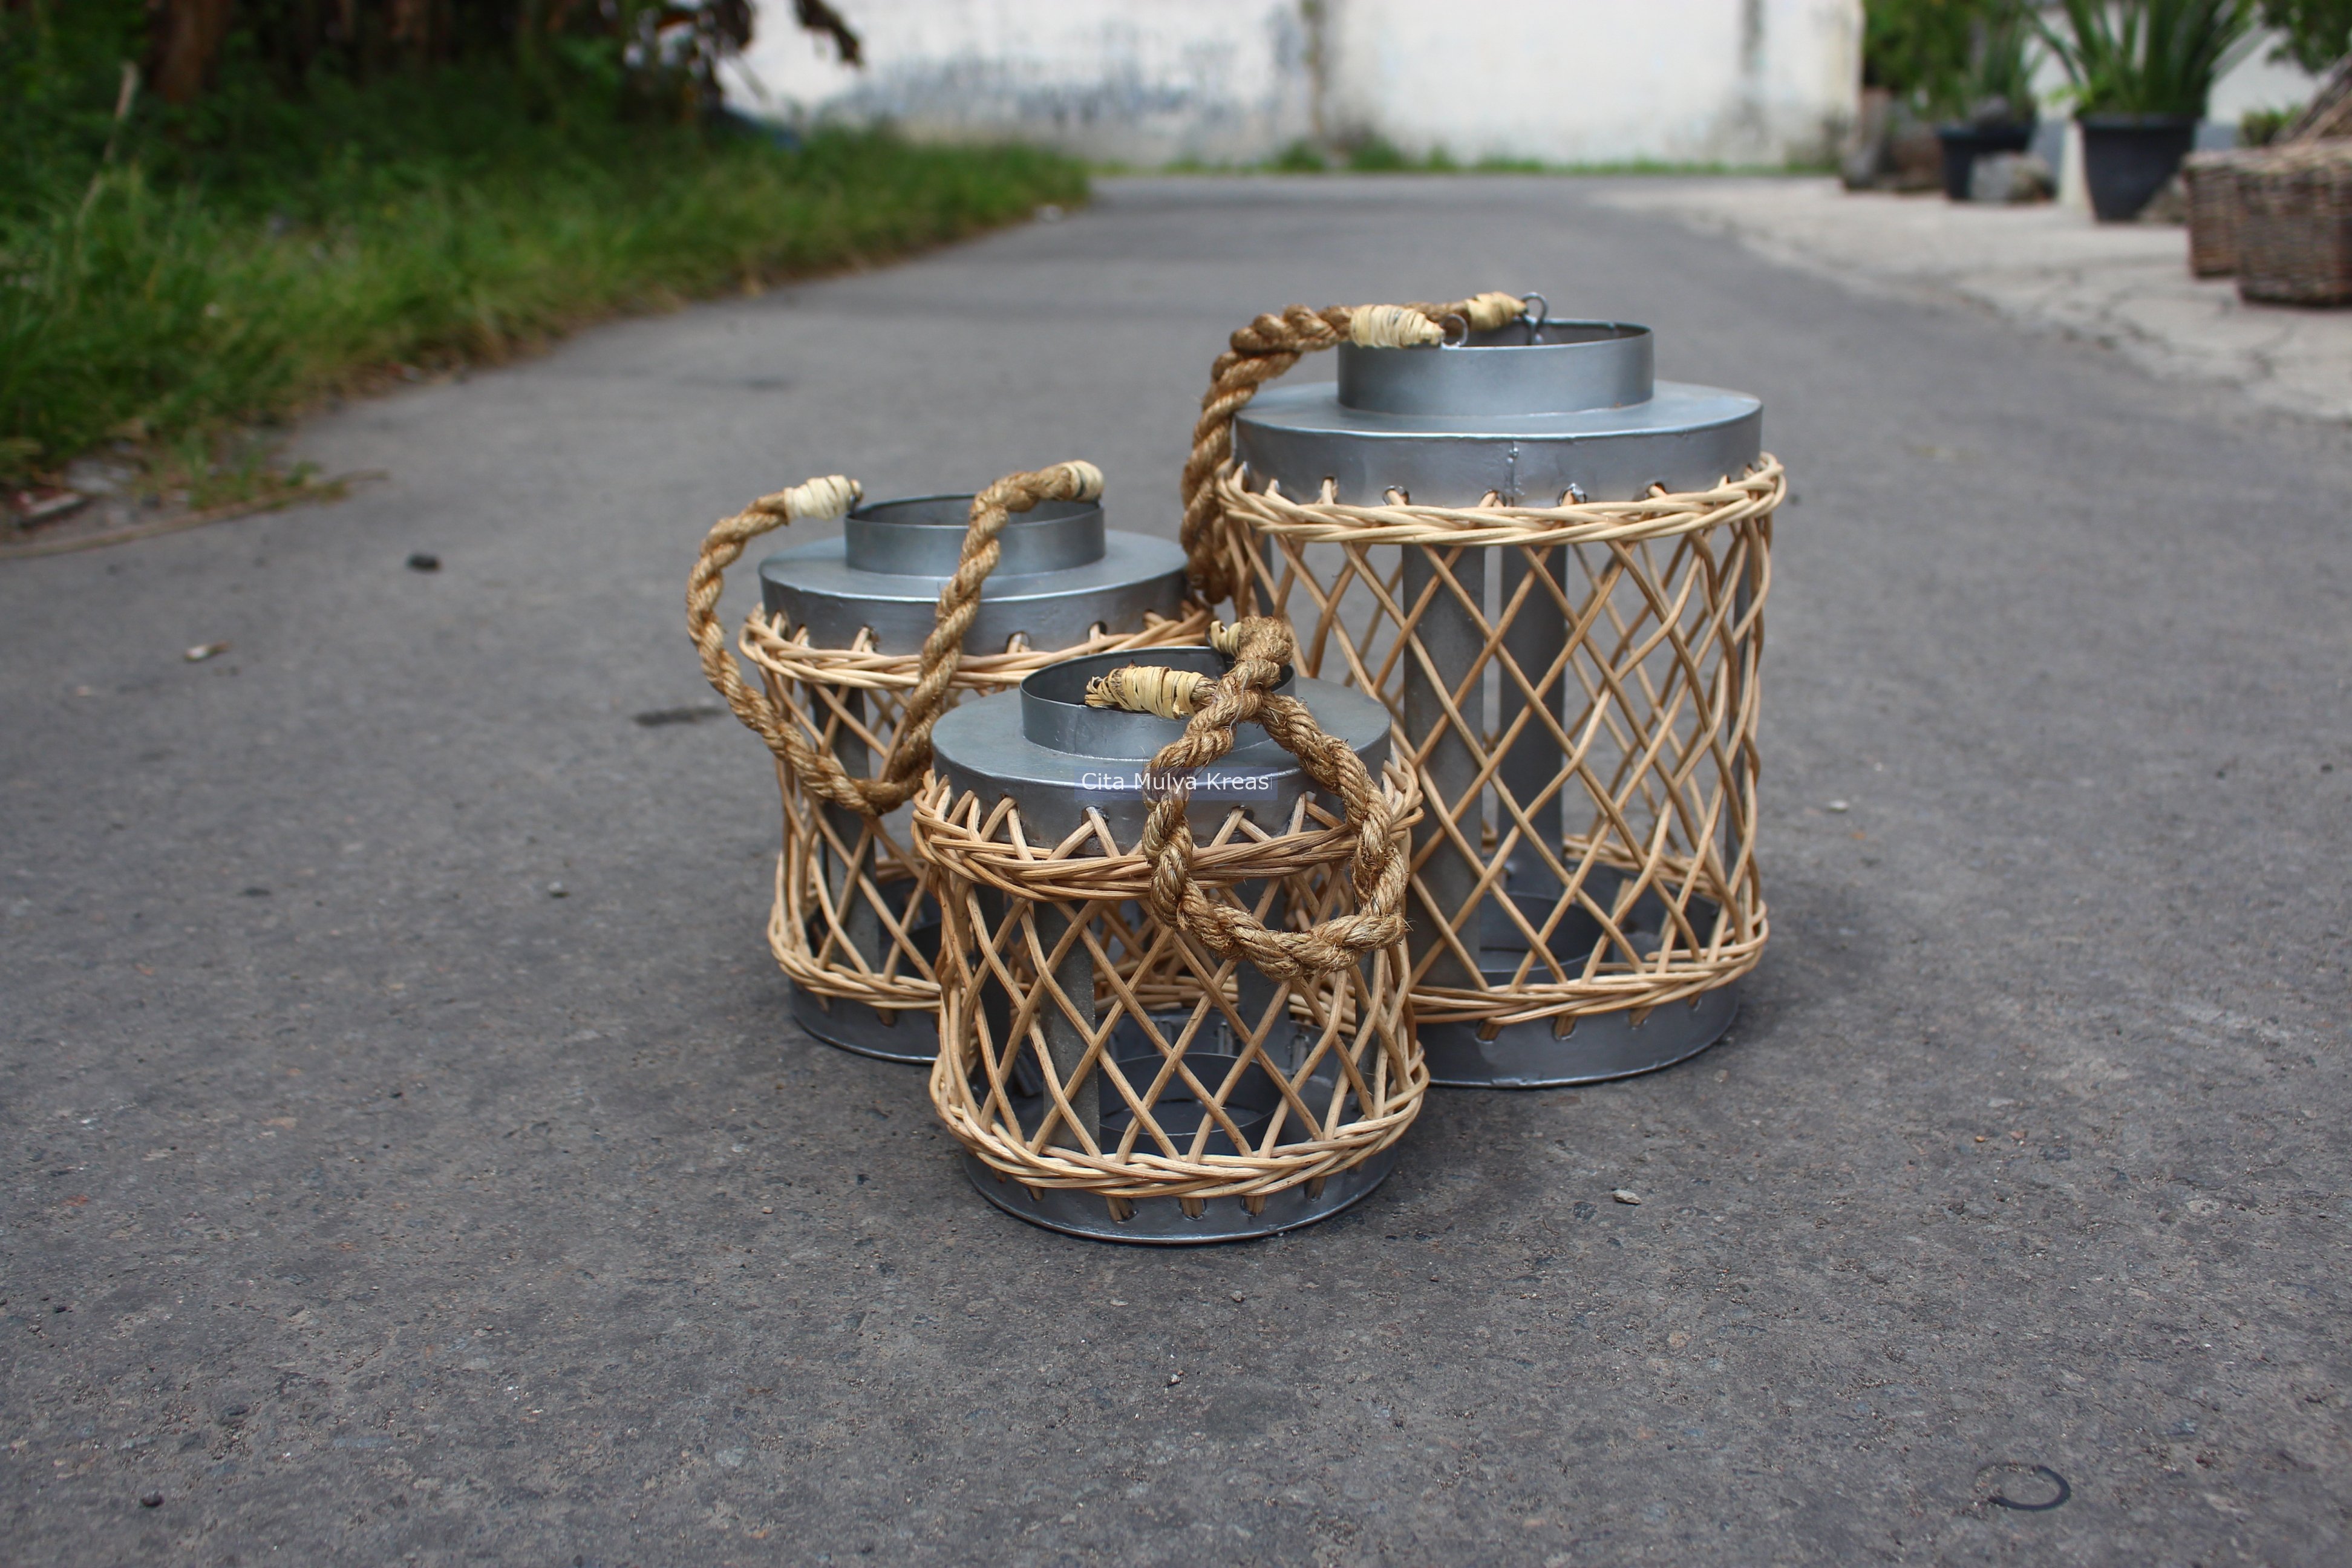 Lantern set of 3 Cita Mulya Kreasi